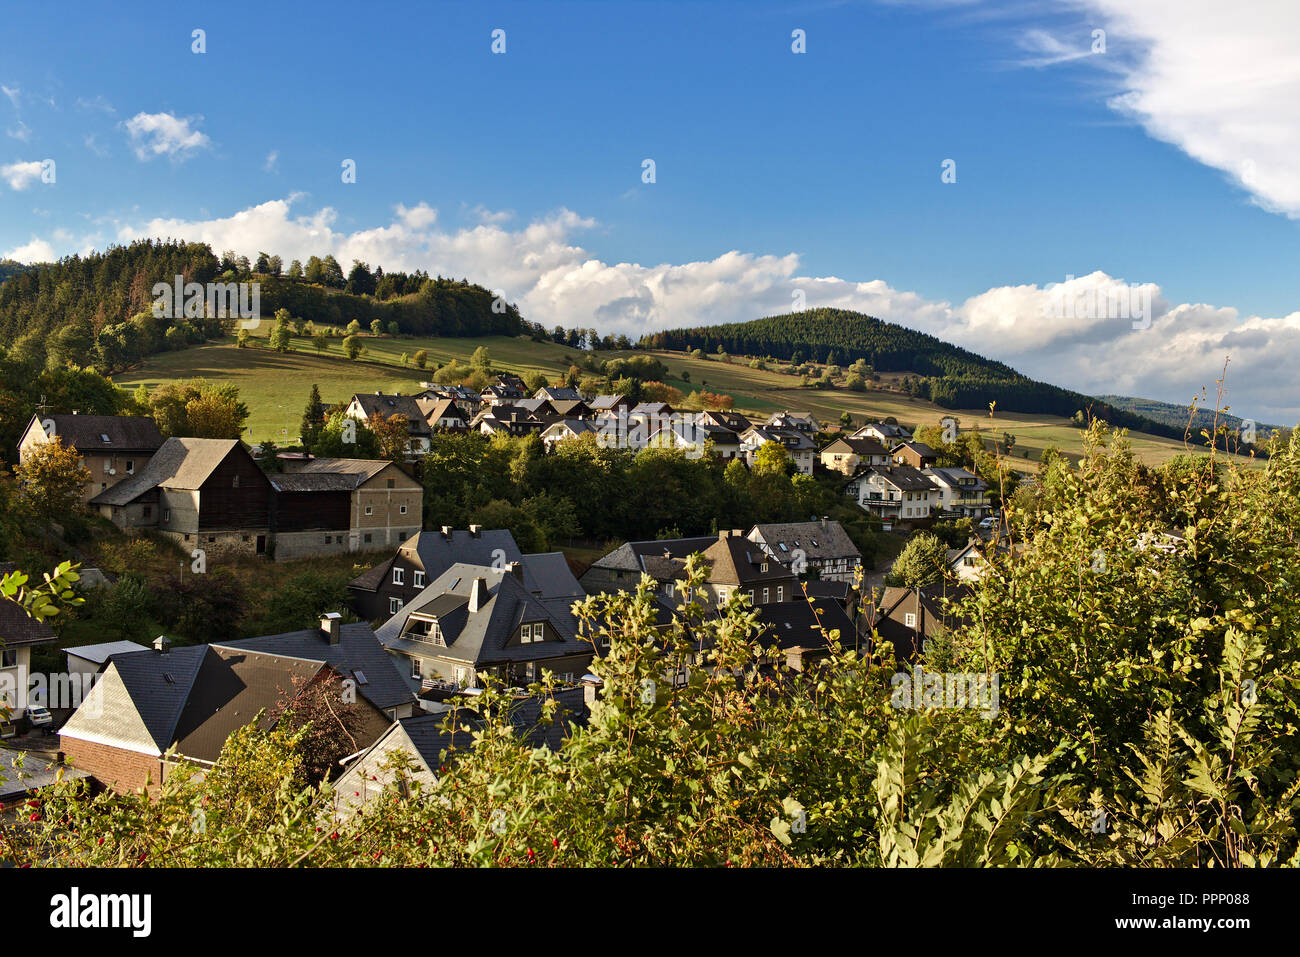 Rasa, Allemagne - petit village niché dans les collines verdoyantes de la région du Sauerland avec collines boisées et ciel bleu en arrière-plan Banque D'Images